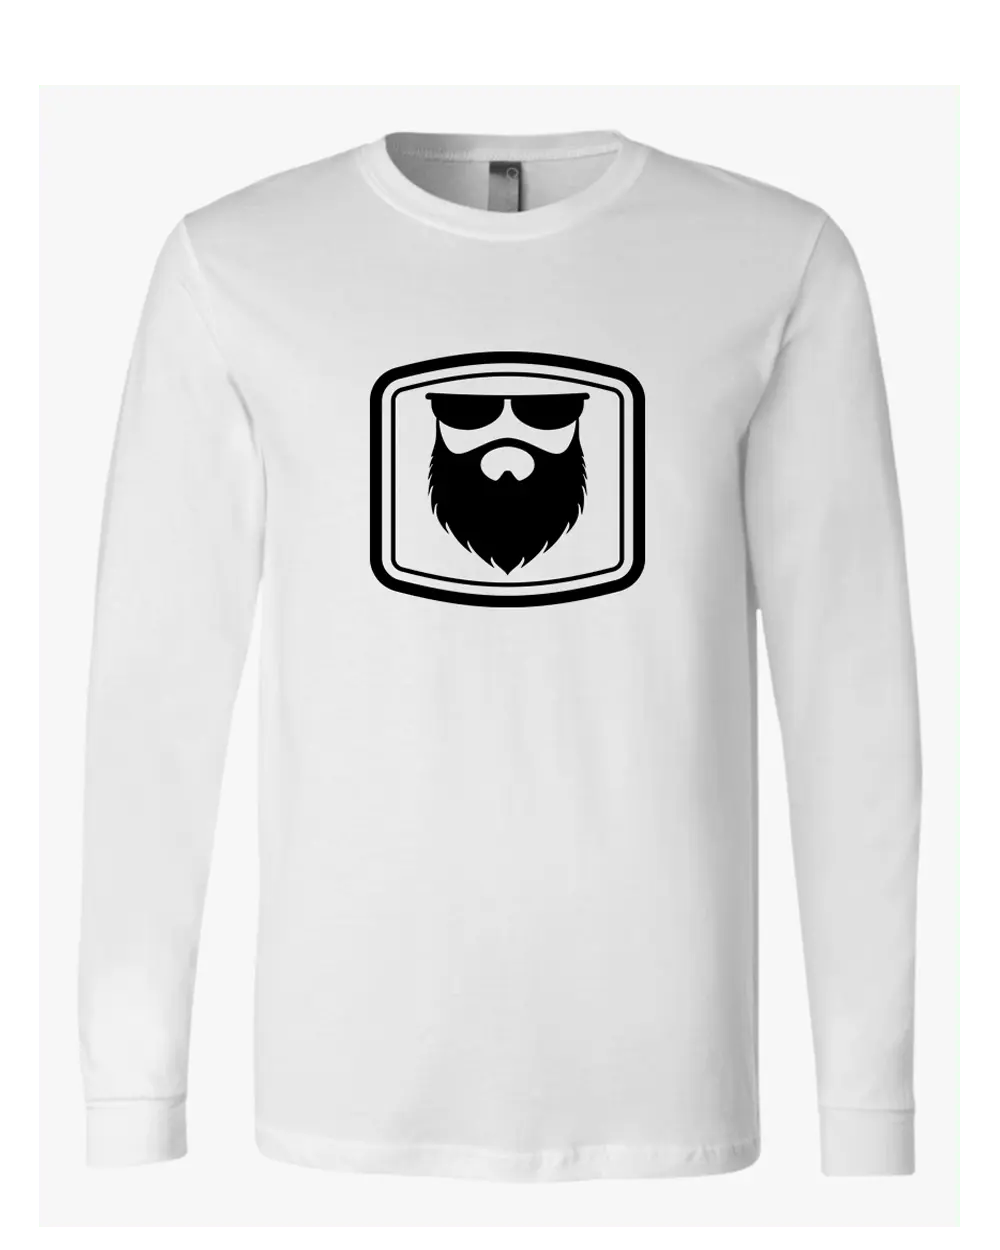 THE OG BEARD 2.0 White Long Sleeve Shirt|Long Sleeve Shirt